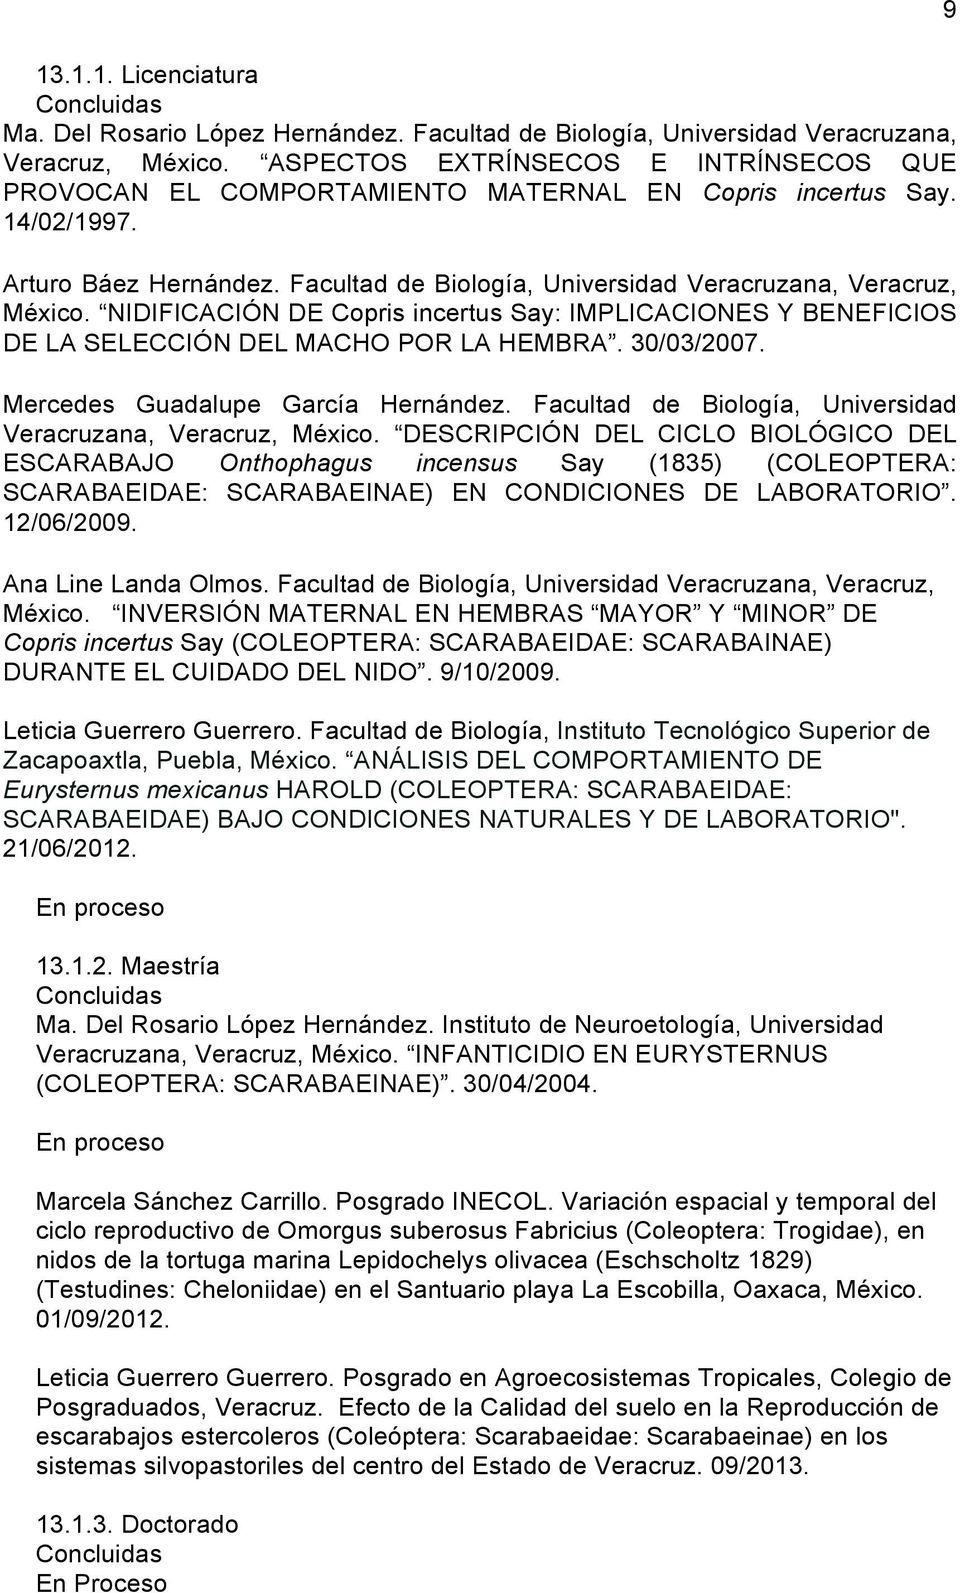 NIDIFICACIÓN DE Copris incertus Say: IMPLICACIONES Y BENEFICIOS DE LA SELECCIÓN DEL MACHO POR LA HEMBRA. 30/03/2007. Mercedes Guadalupe García Hernández.